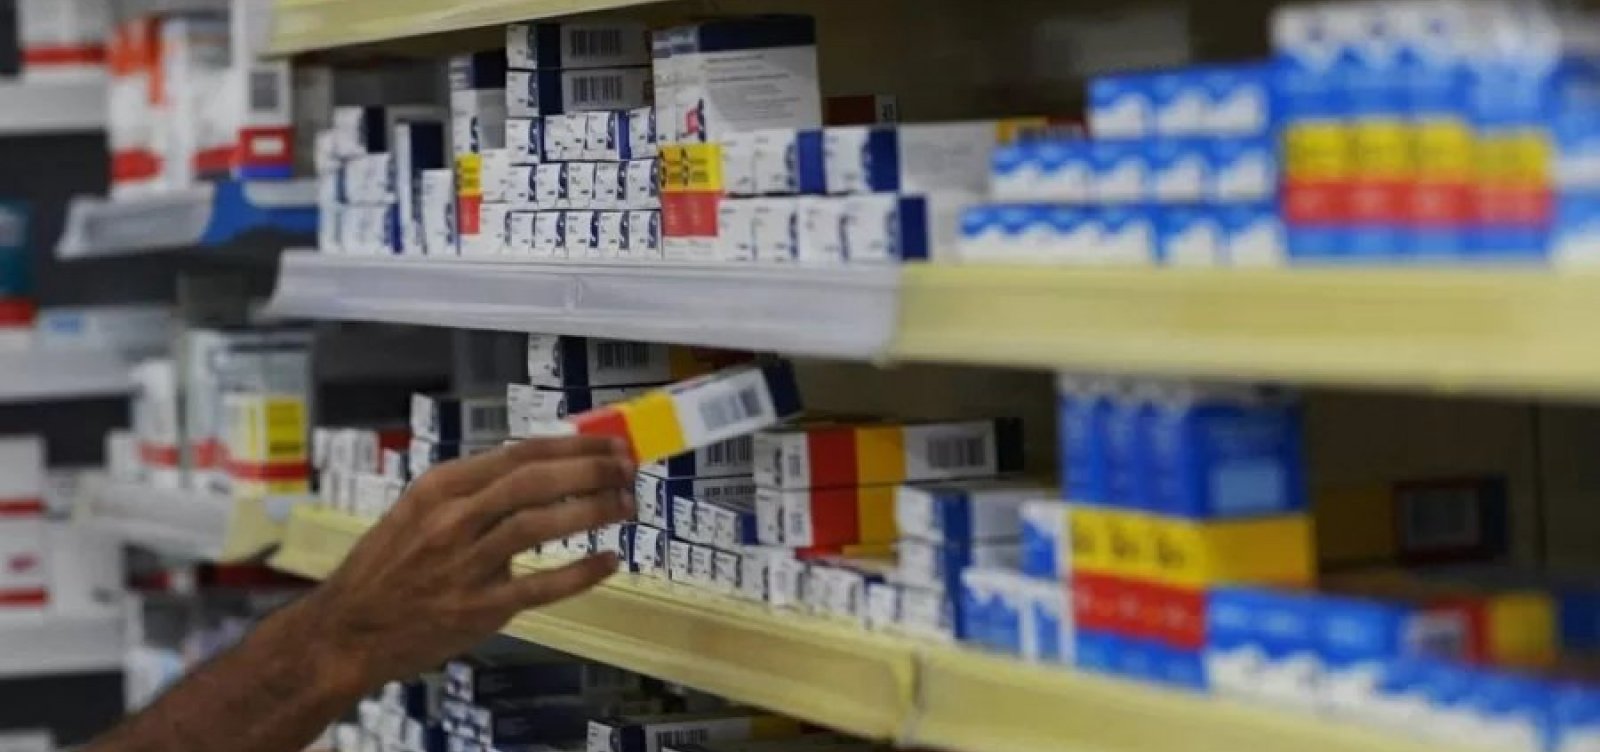 Farmácia em Salvador usa "clientes falsos" para fiscalizar se funcionários coletam CPFs nos atendimentos